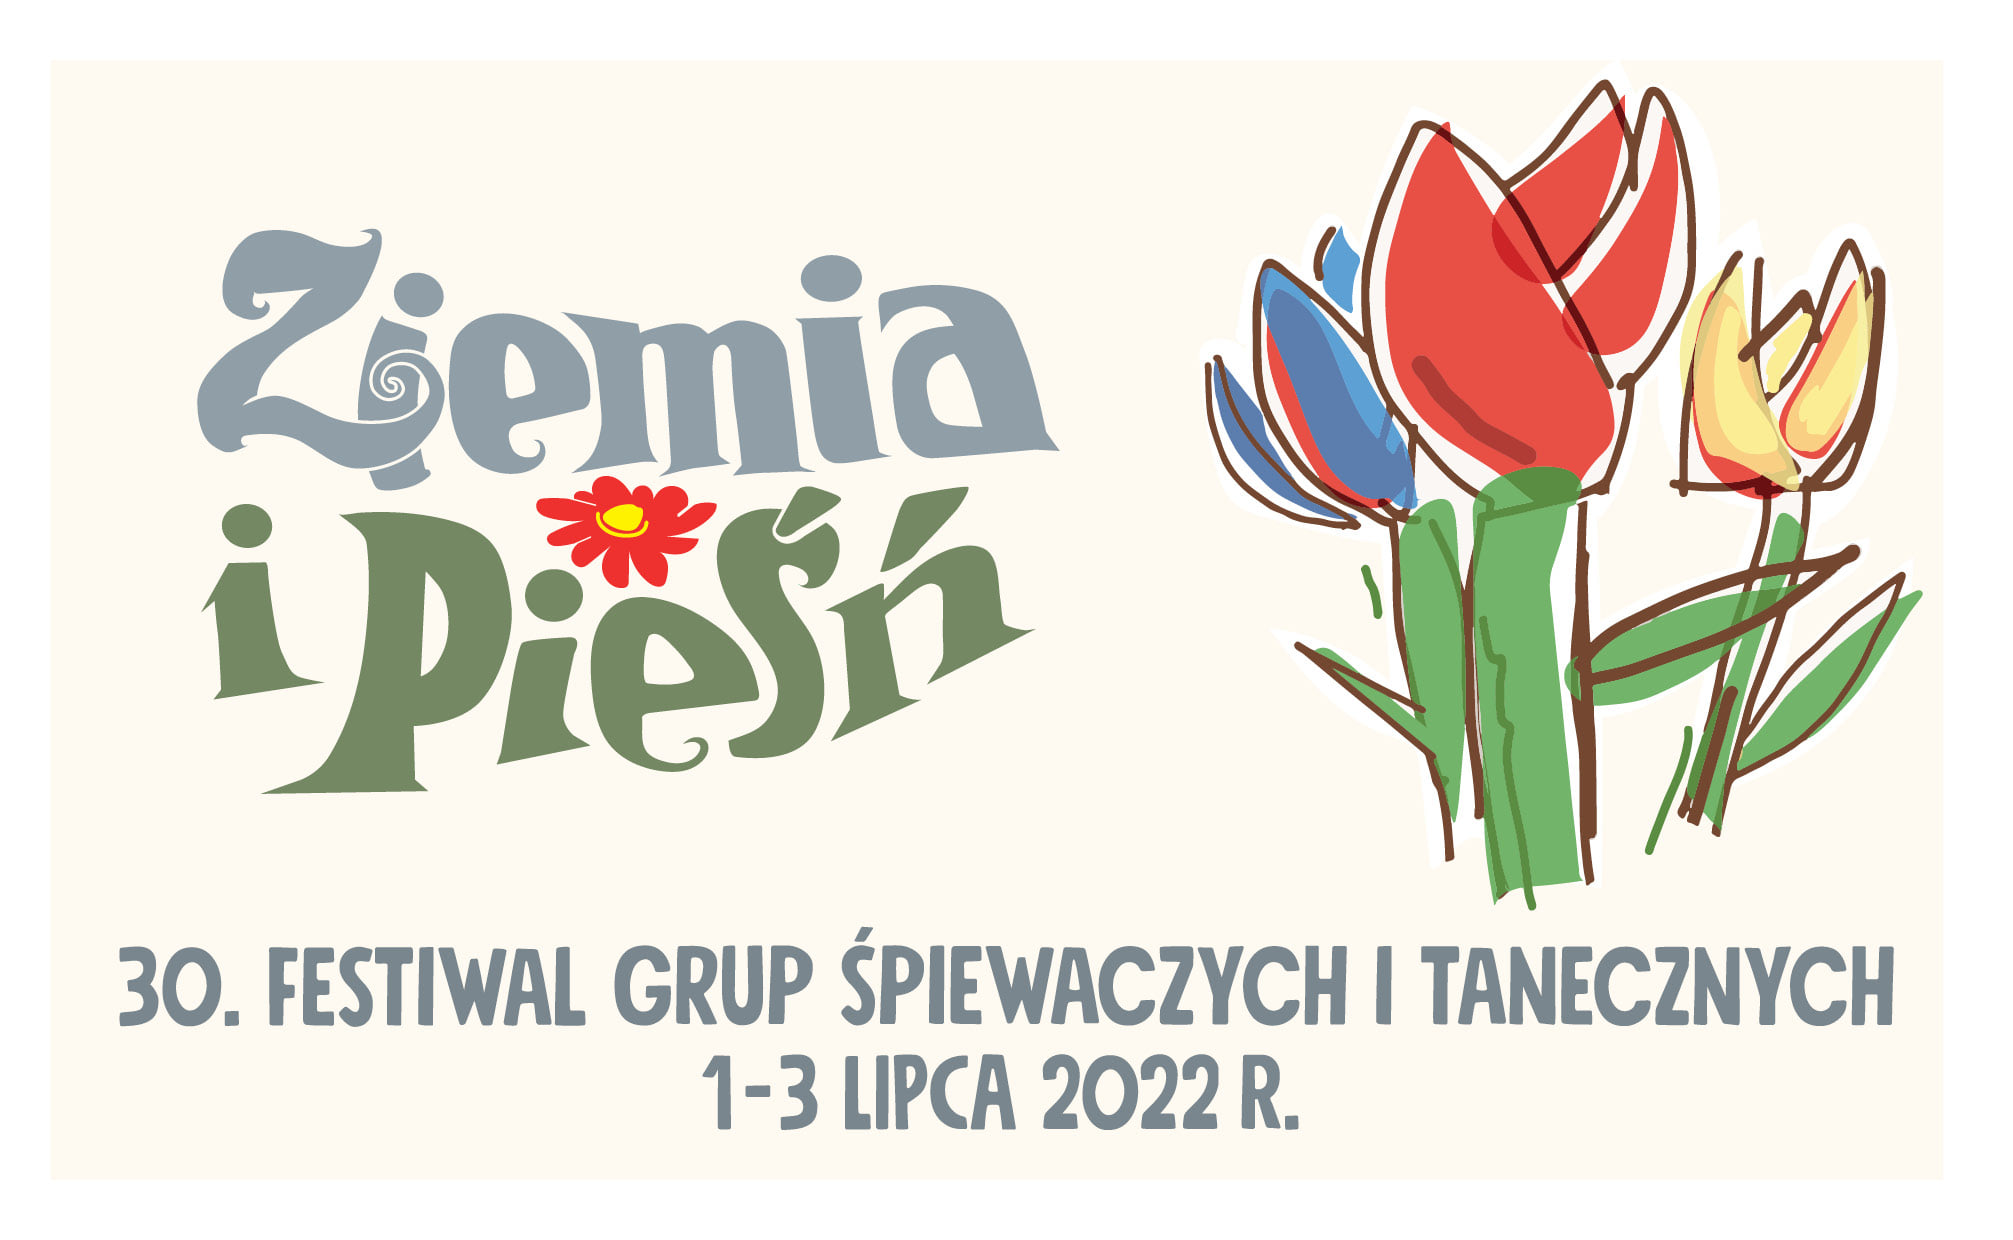 Festiwal Ziemia i Pieśń